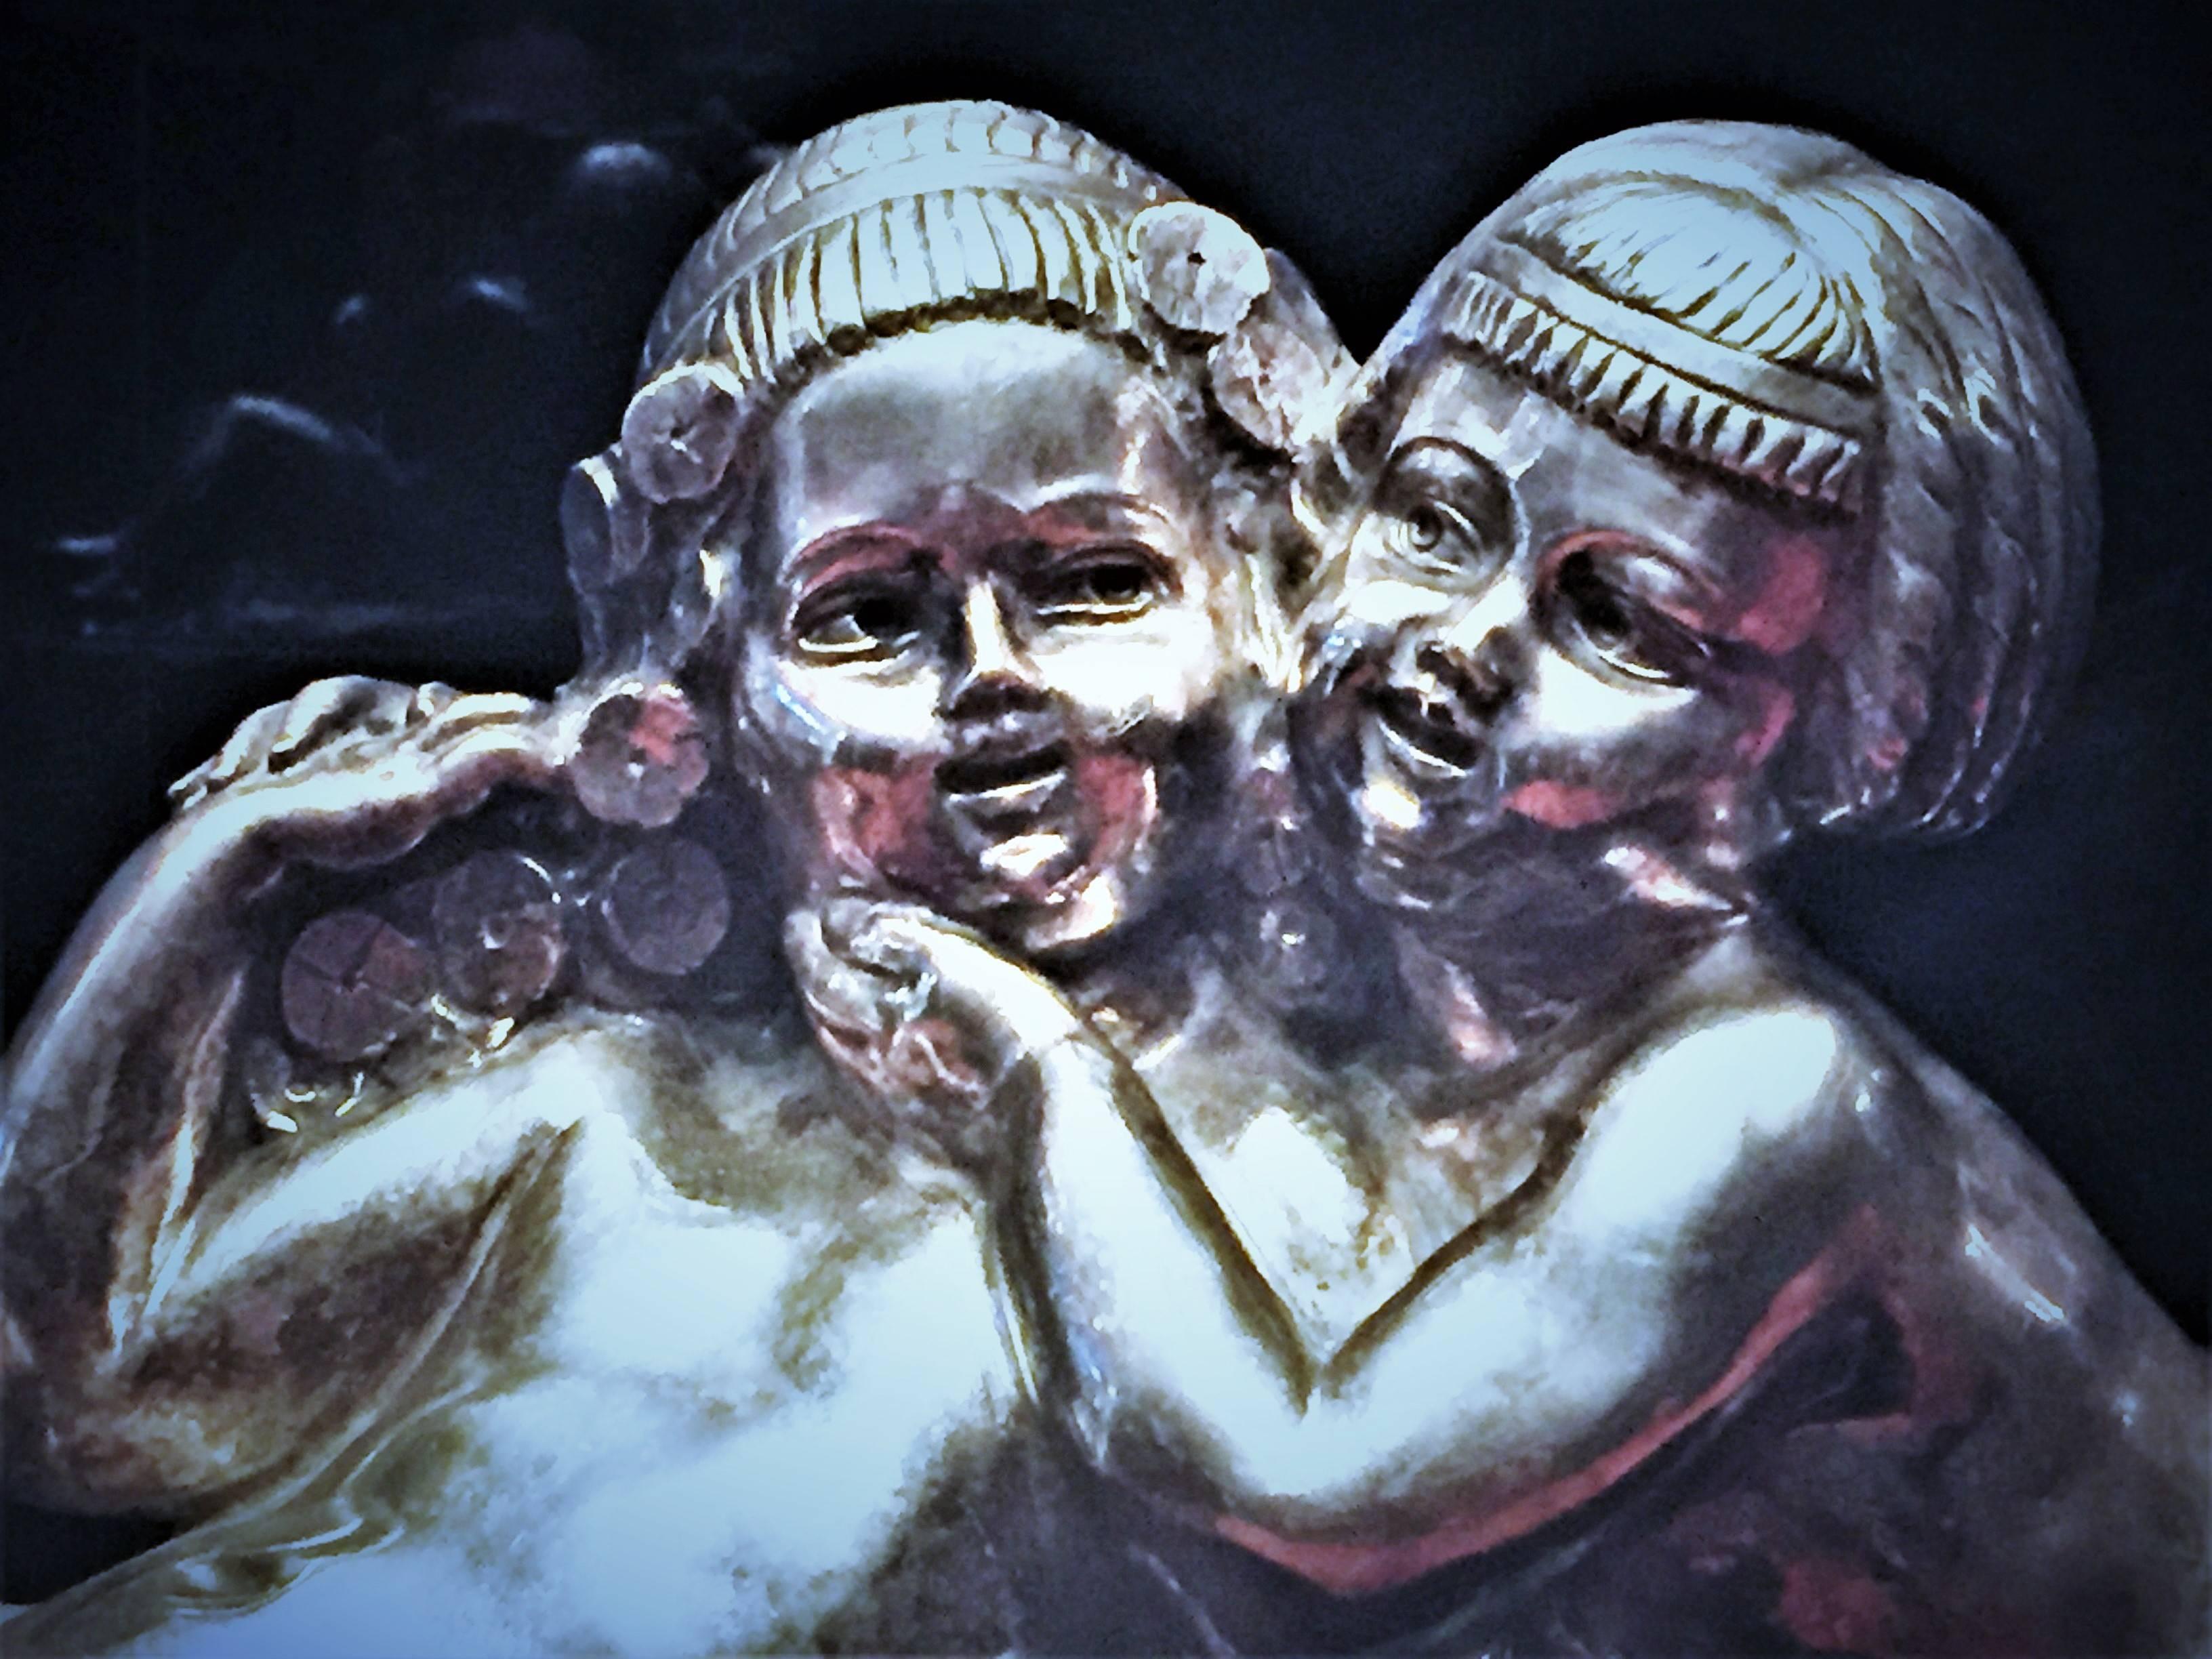 Groupe sculptural Art Déco en bronze argenté avec deux figures féminines putti allongées dans une étreinte, entourées de fleurs et de filigranes. La sculpture a une belle finition argentée, et repose sur la base originale en marbre rouge. Signé sur